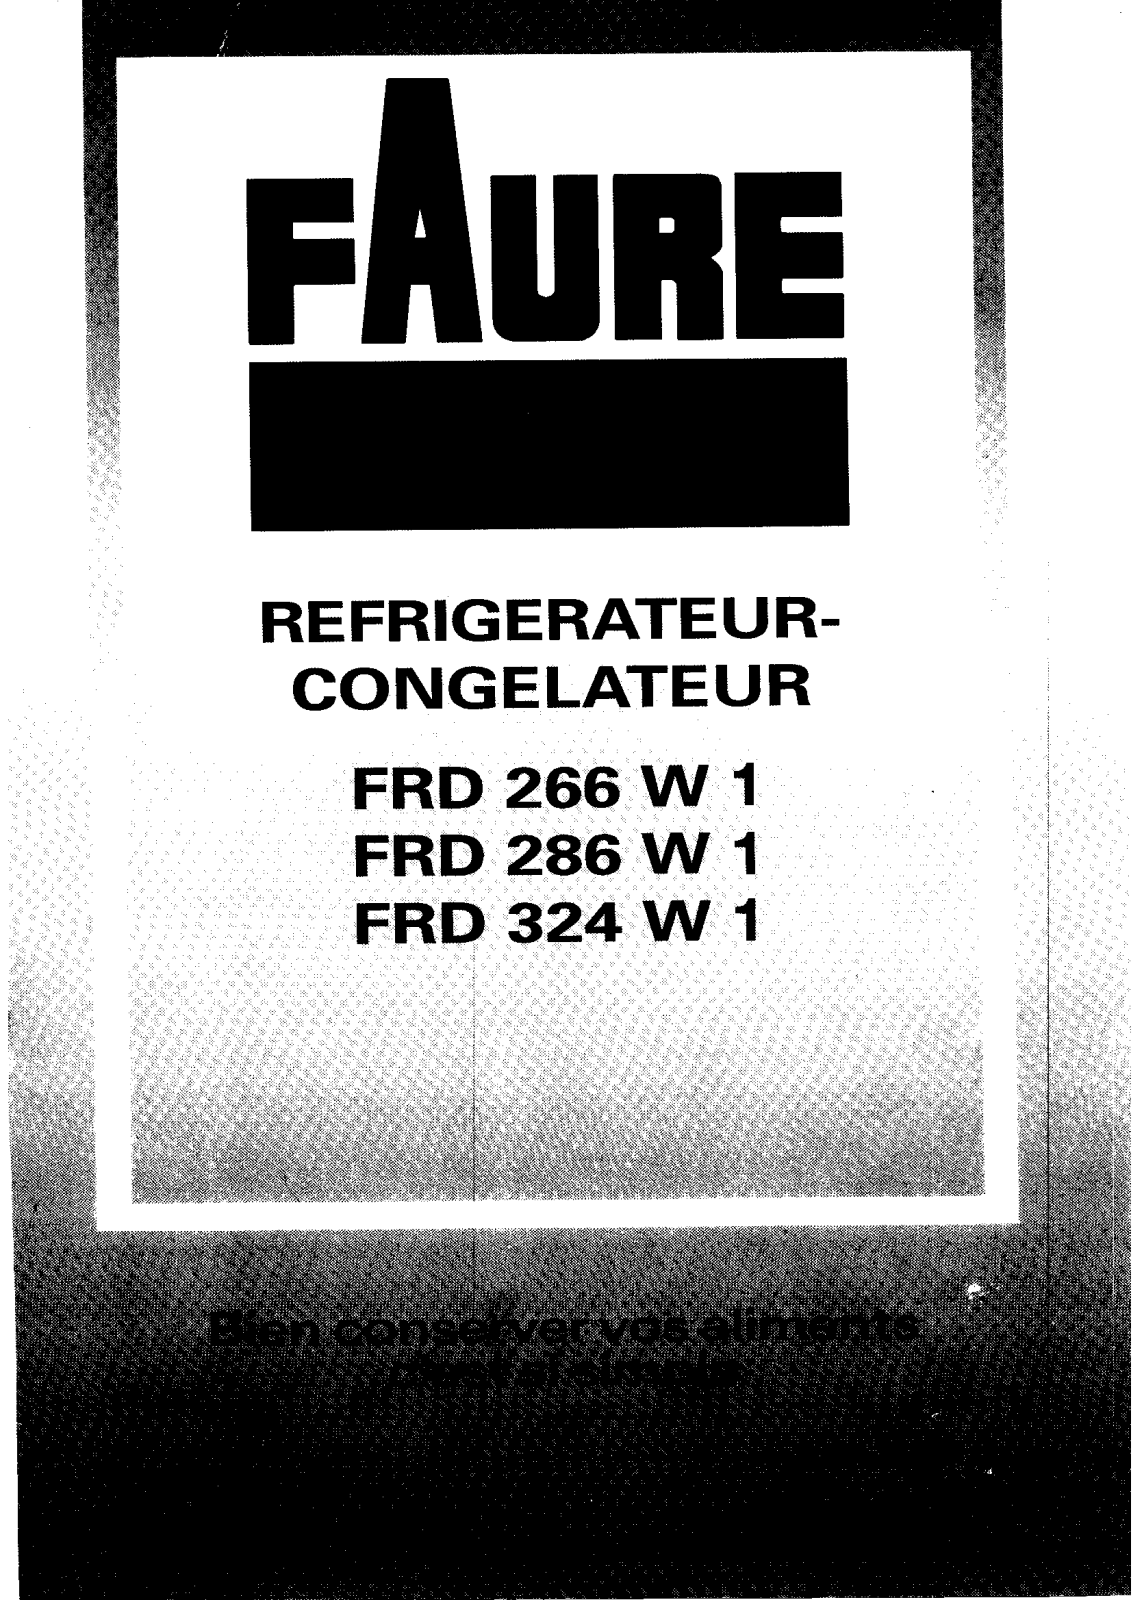 Faure FRD289W, FRD286W, FRD268W, FRD266W, FRD324W Manual